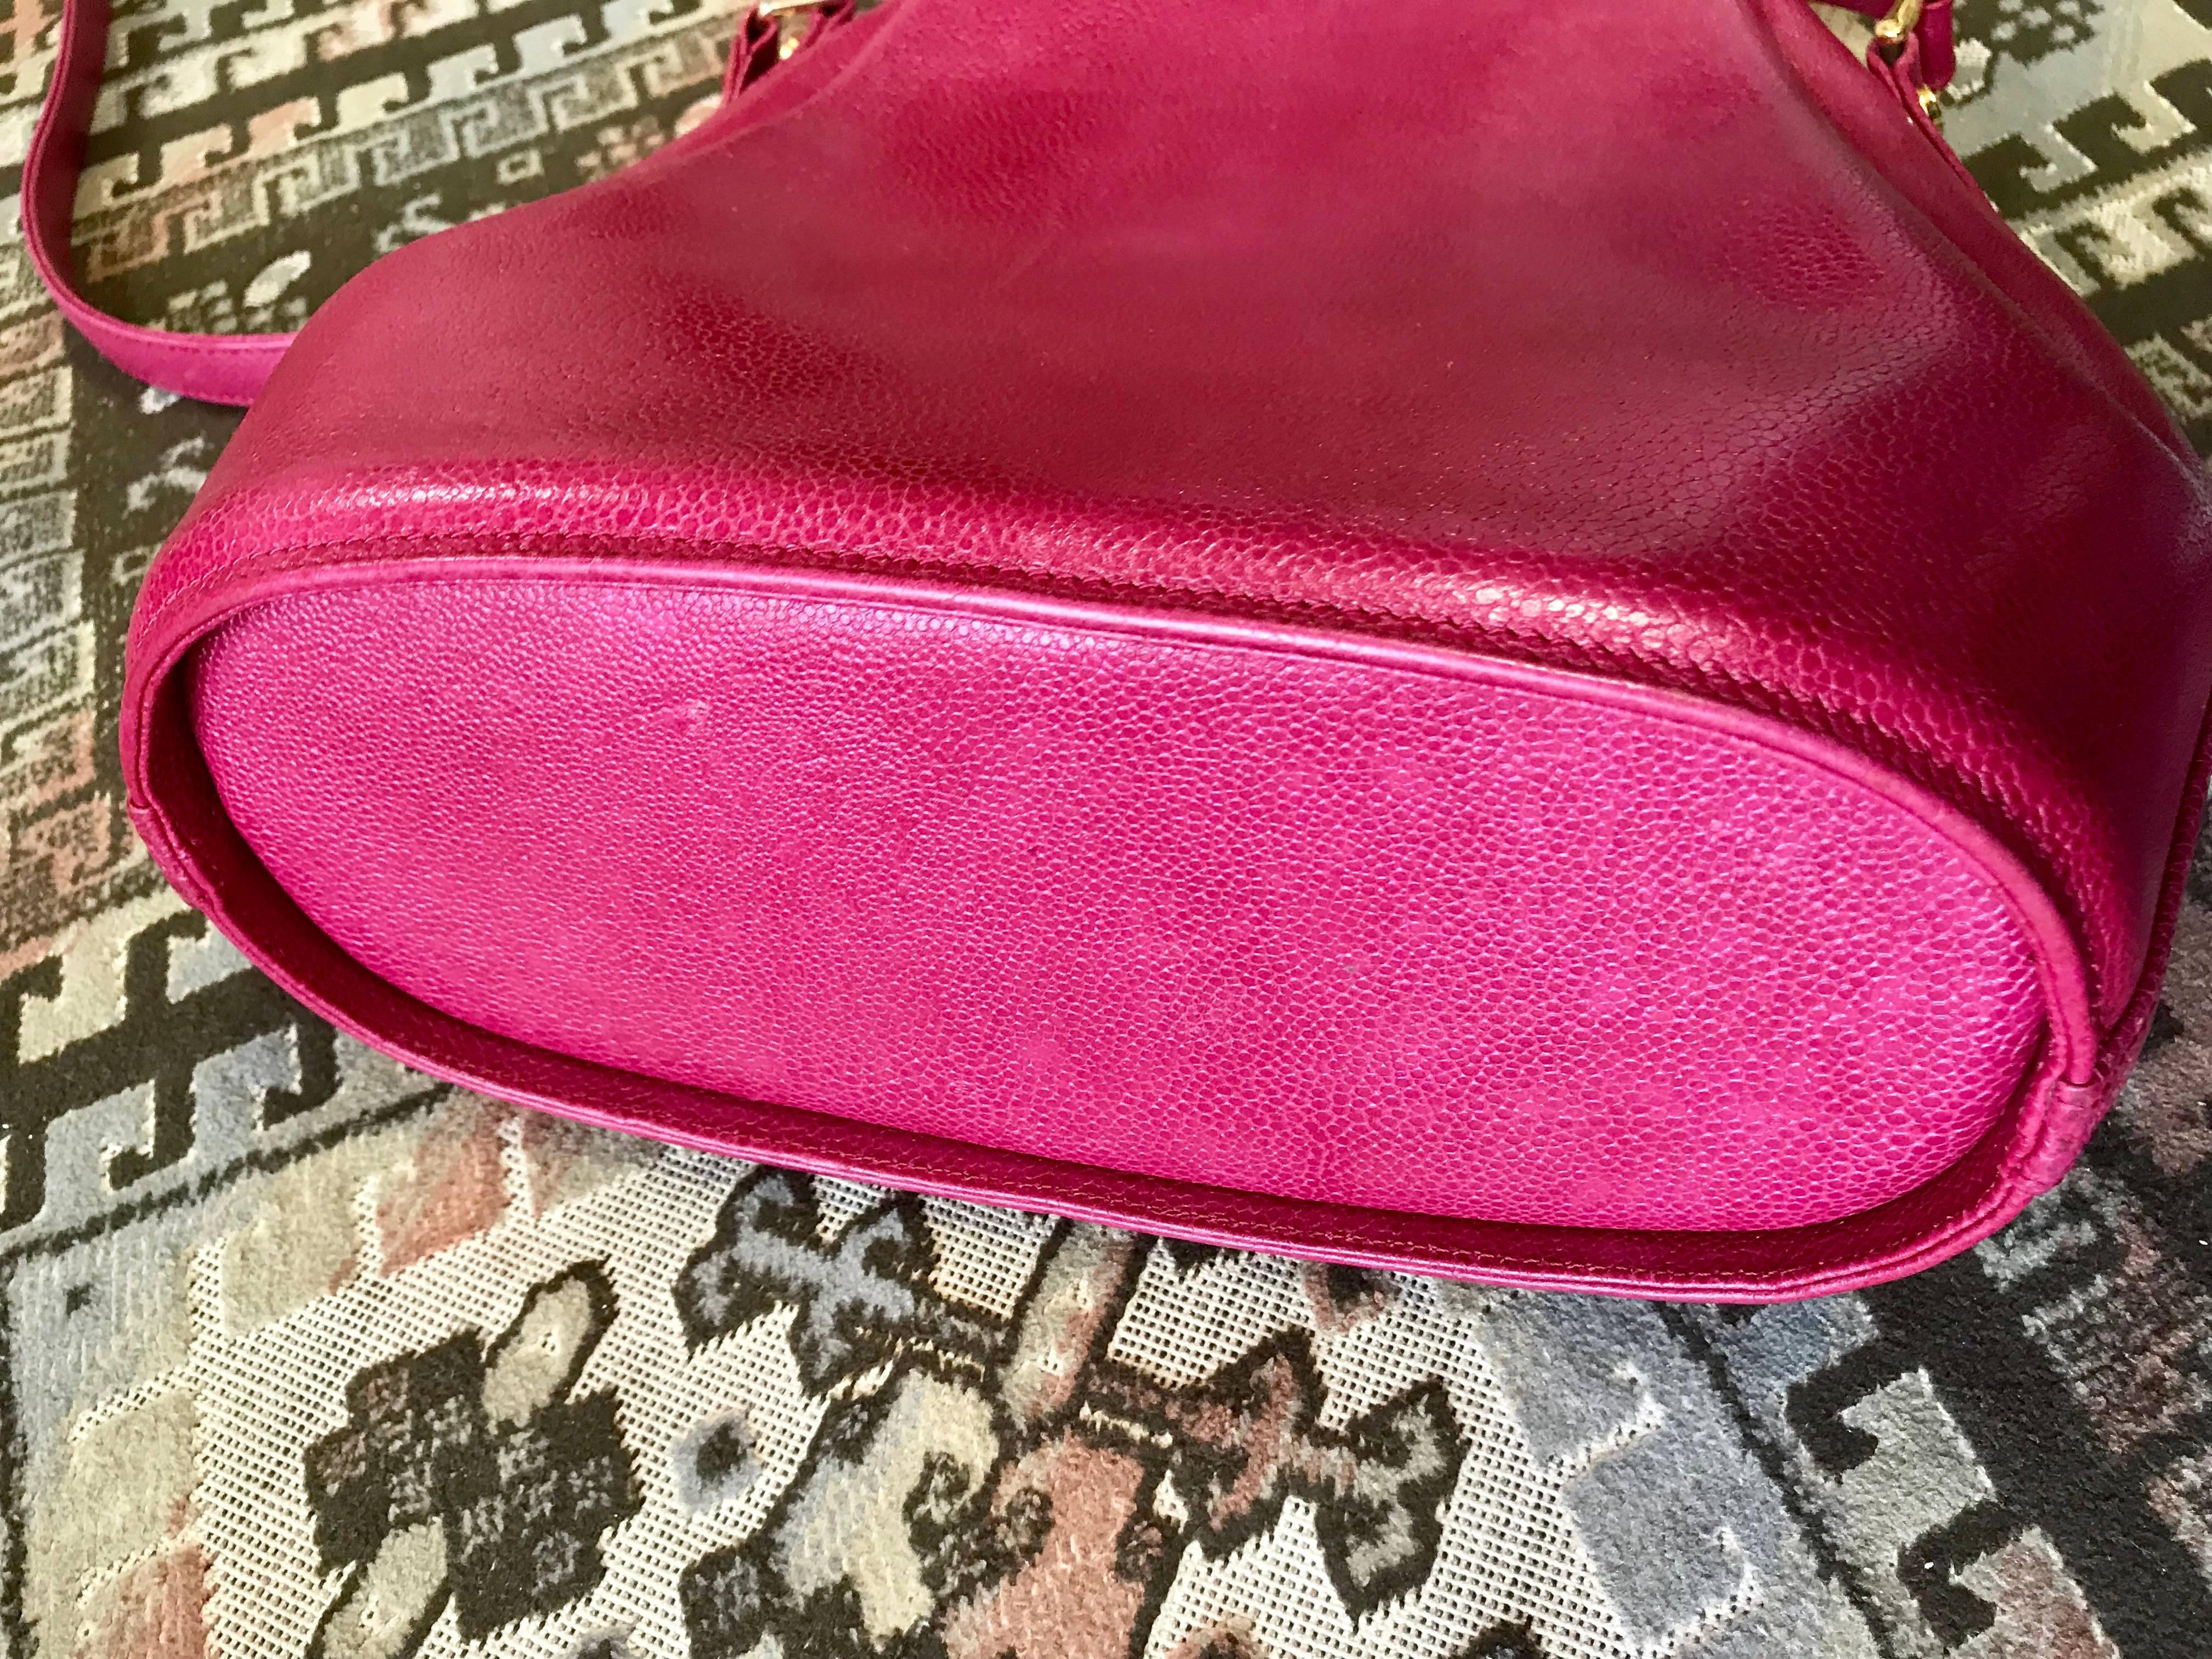 Vintage Valentino Garavani pink leather hobo bucket shoulder bag with round logo For Sale 2